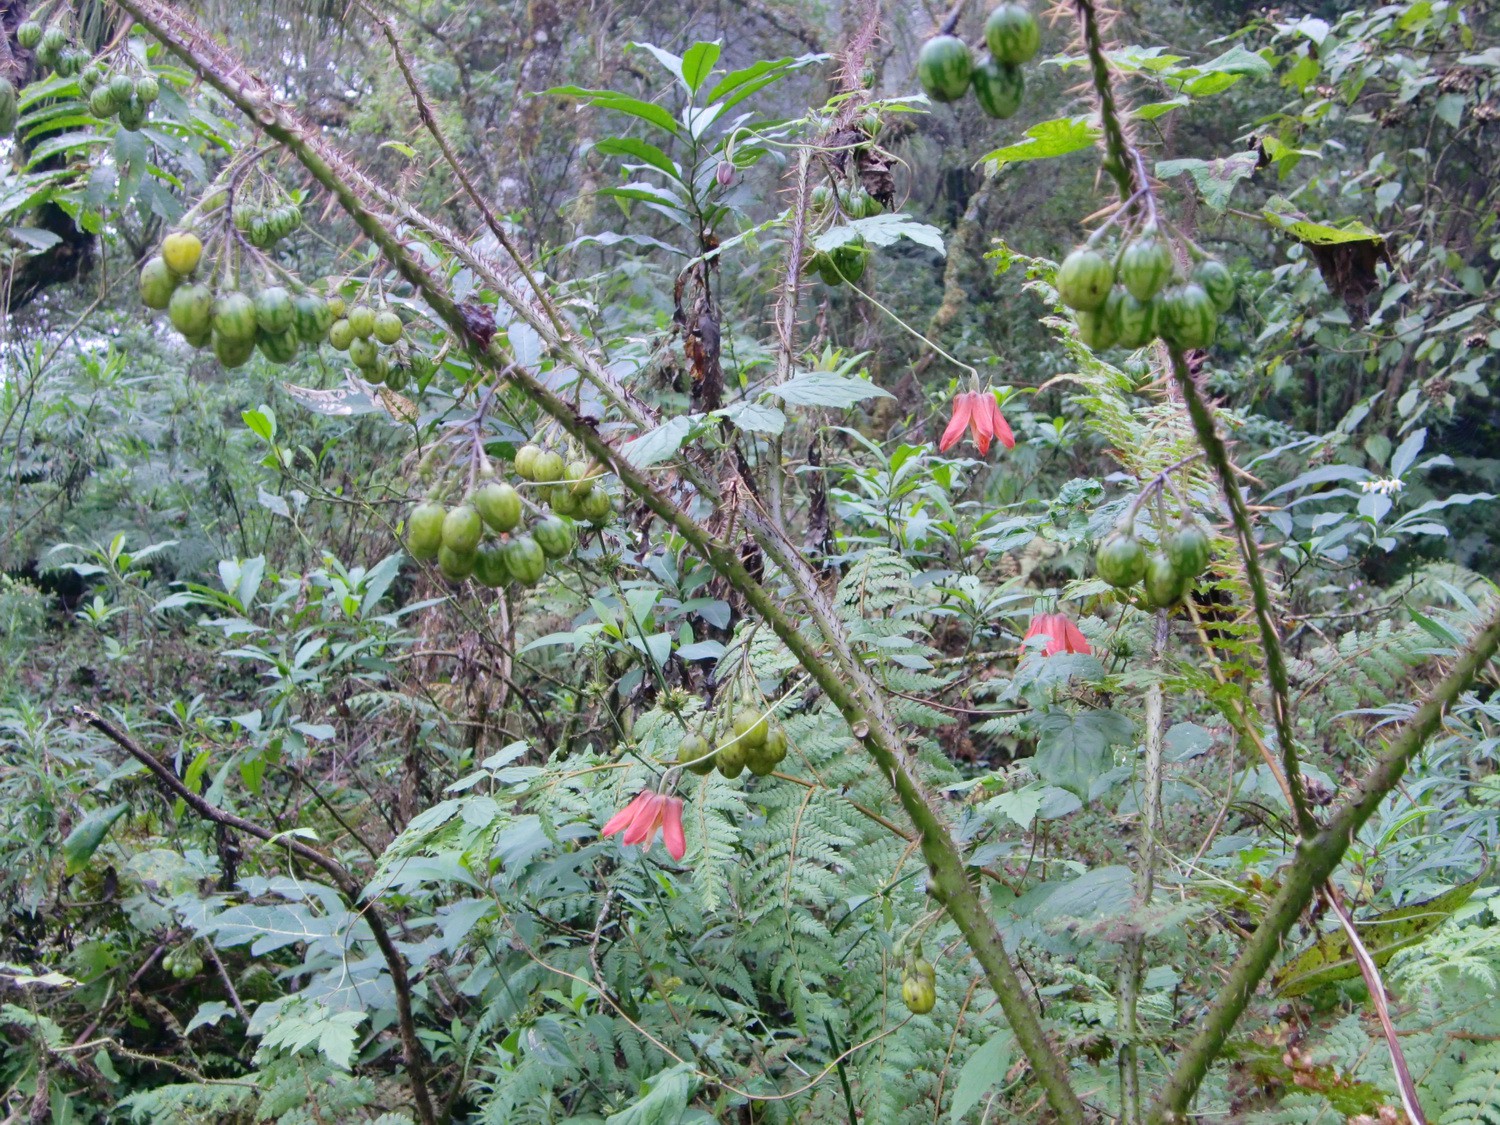 Green / yellow fruits in the Quebrada San Lorenzo